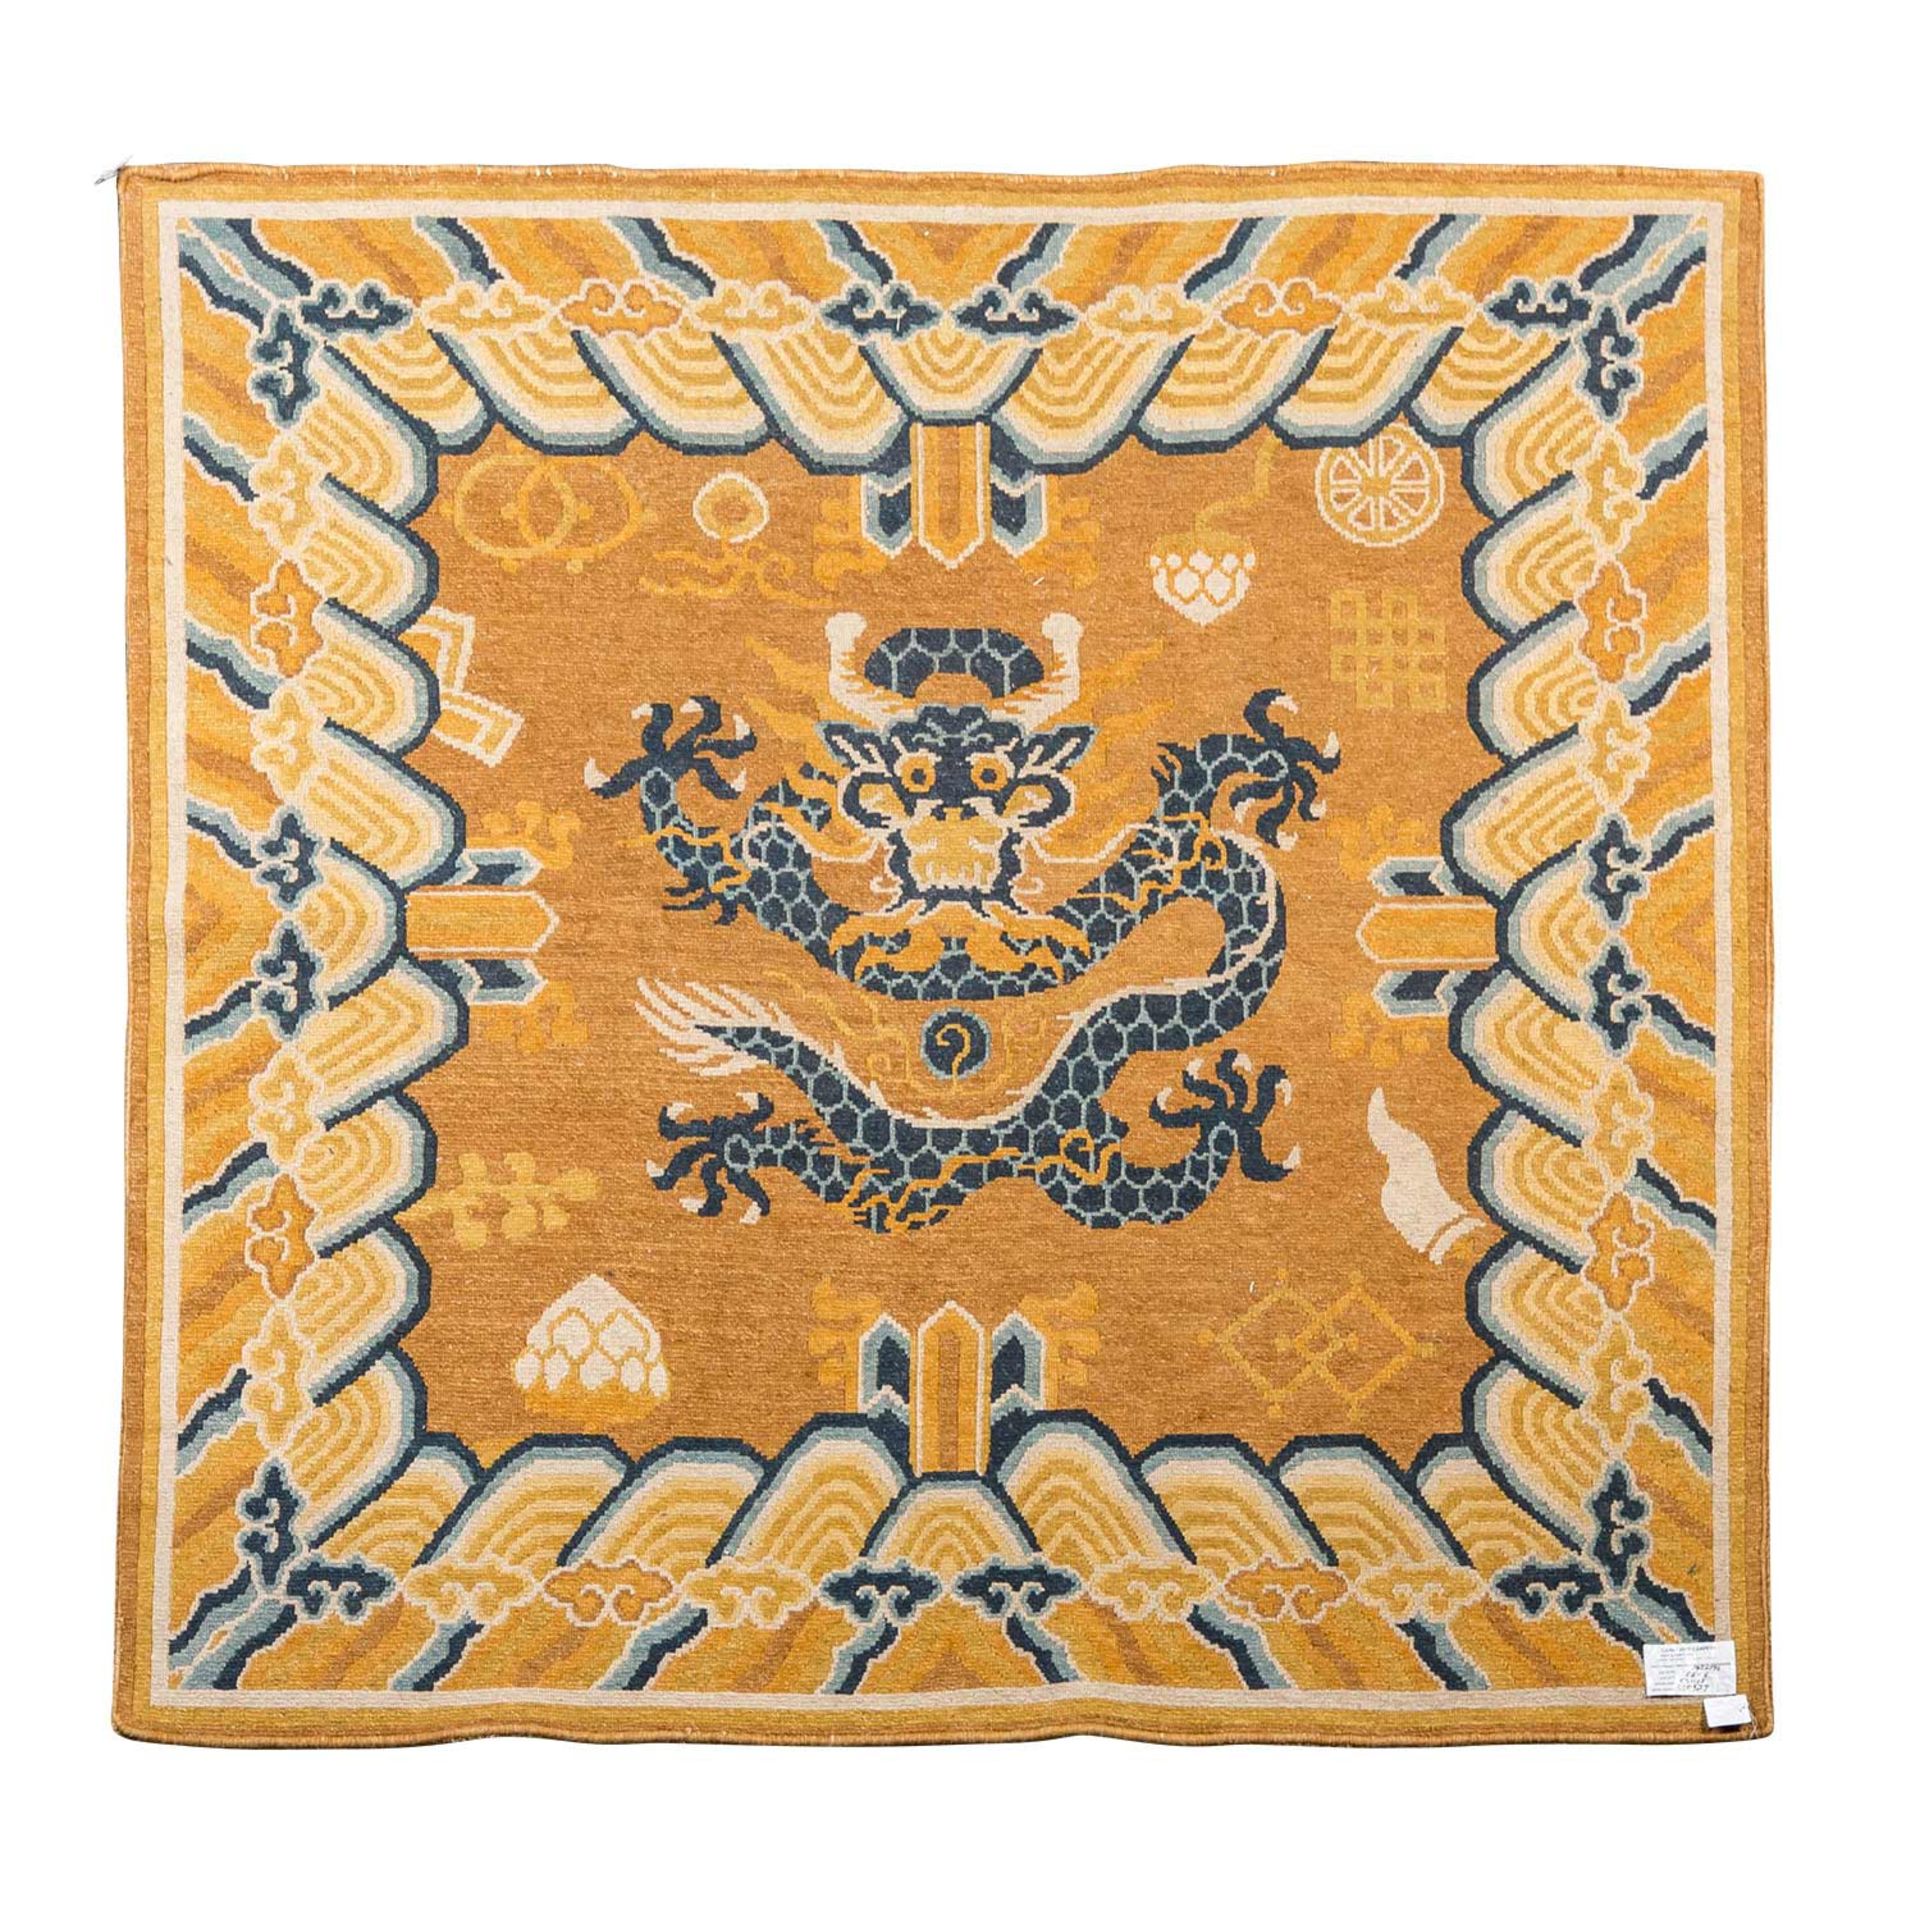 Teppich. CHINA/PEKING, 20. Jh., ca. 191x195 cm.Ein großer, zentraler Drachen ziert den - Bild 2 aus 4